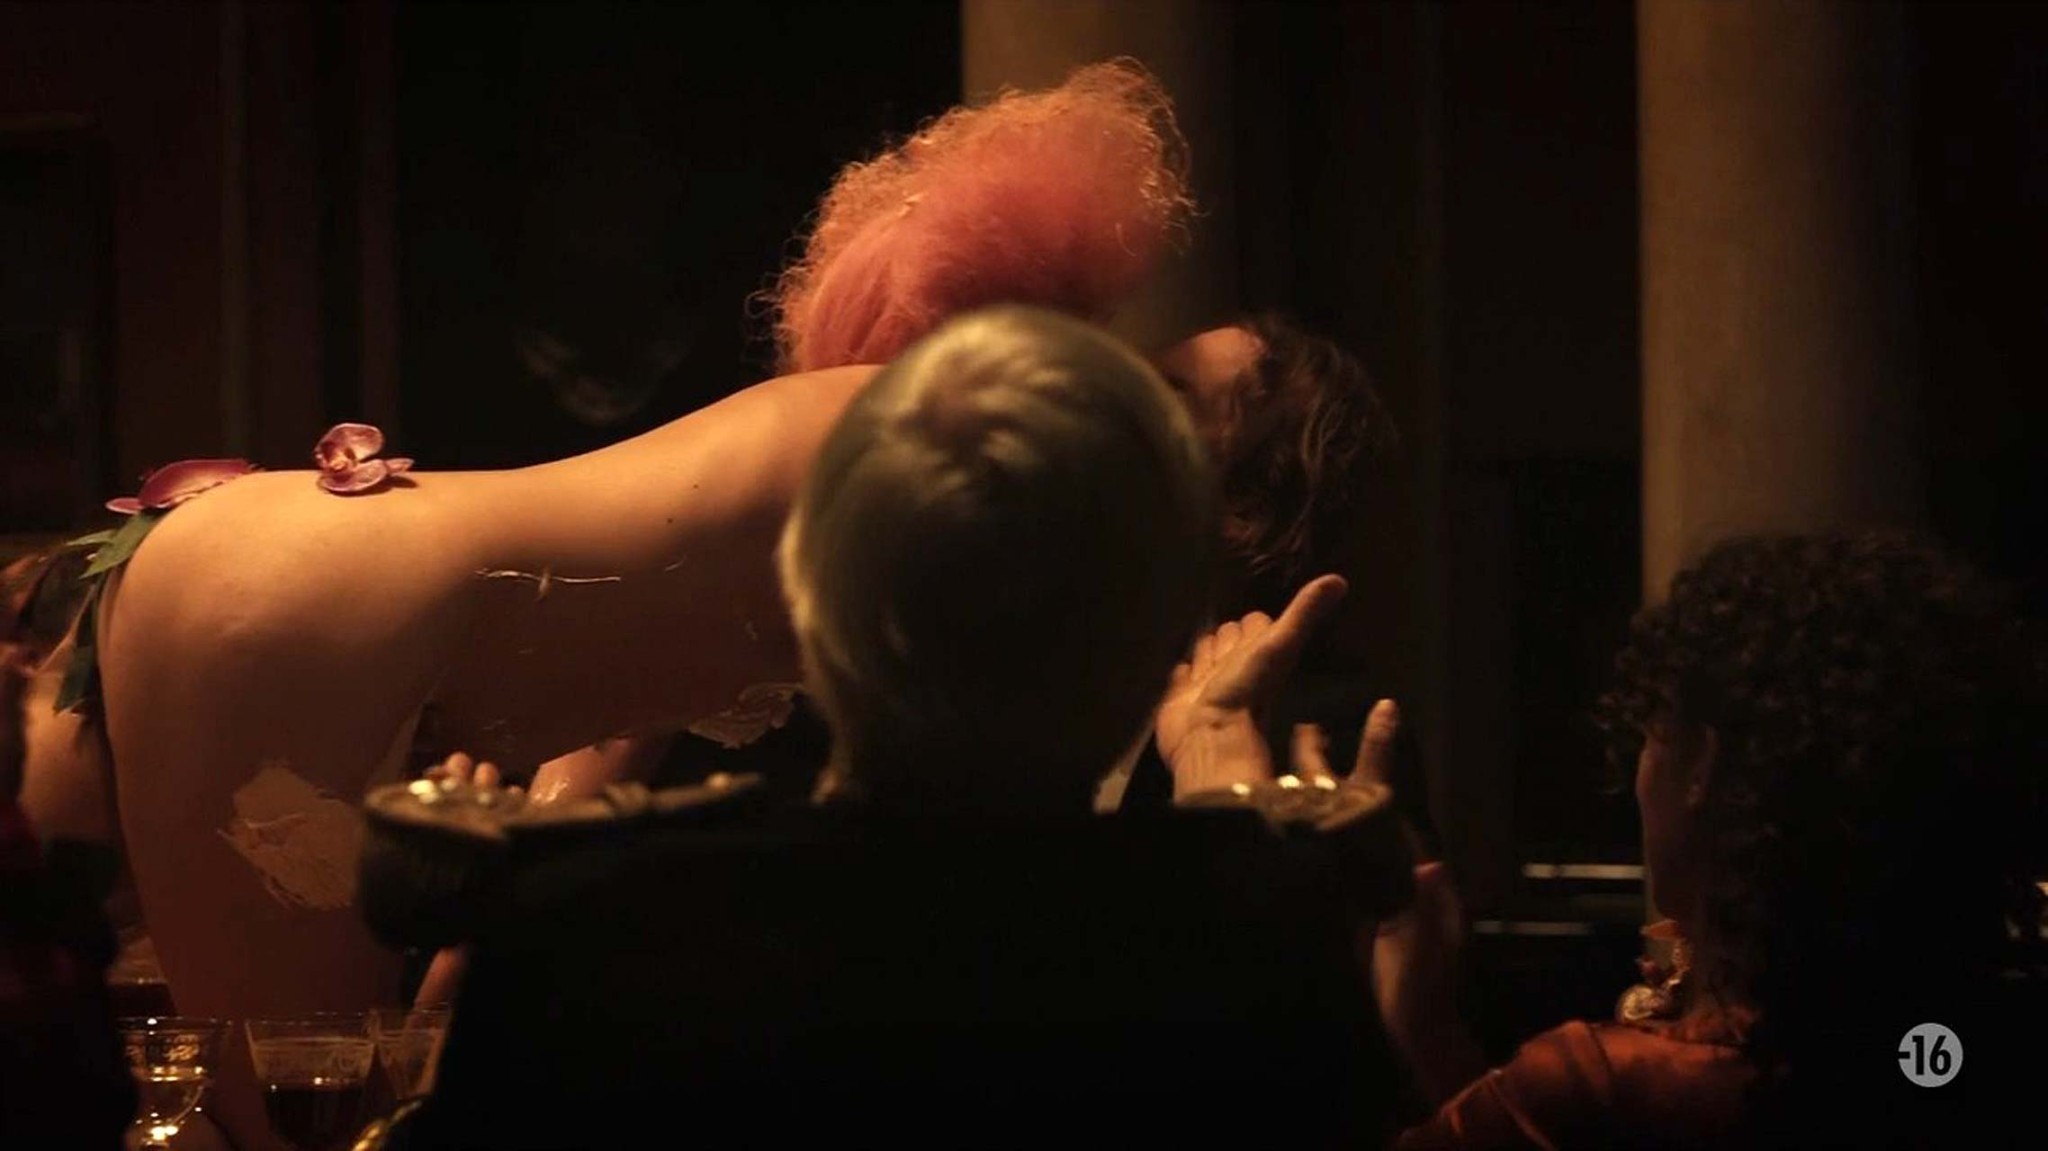 Anne charrier exposant ses beaux seins et ses bas dans une scène de film nu
 #75329994